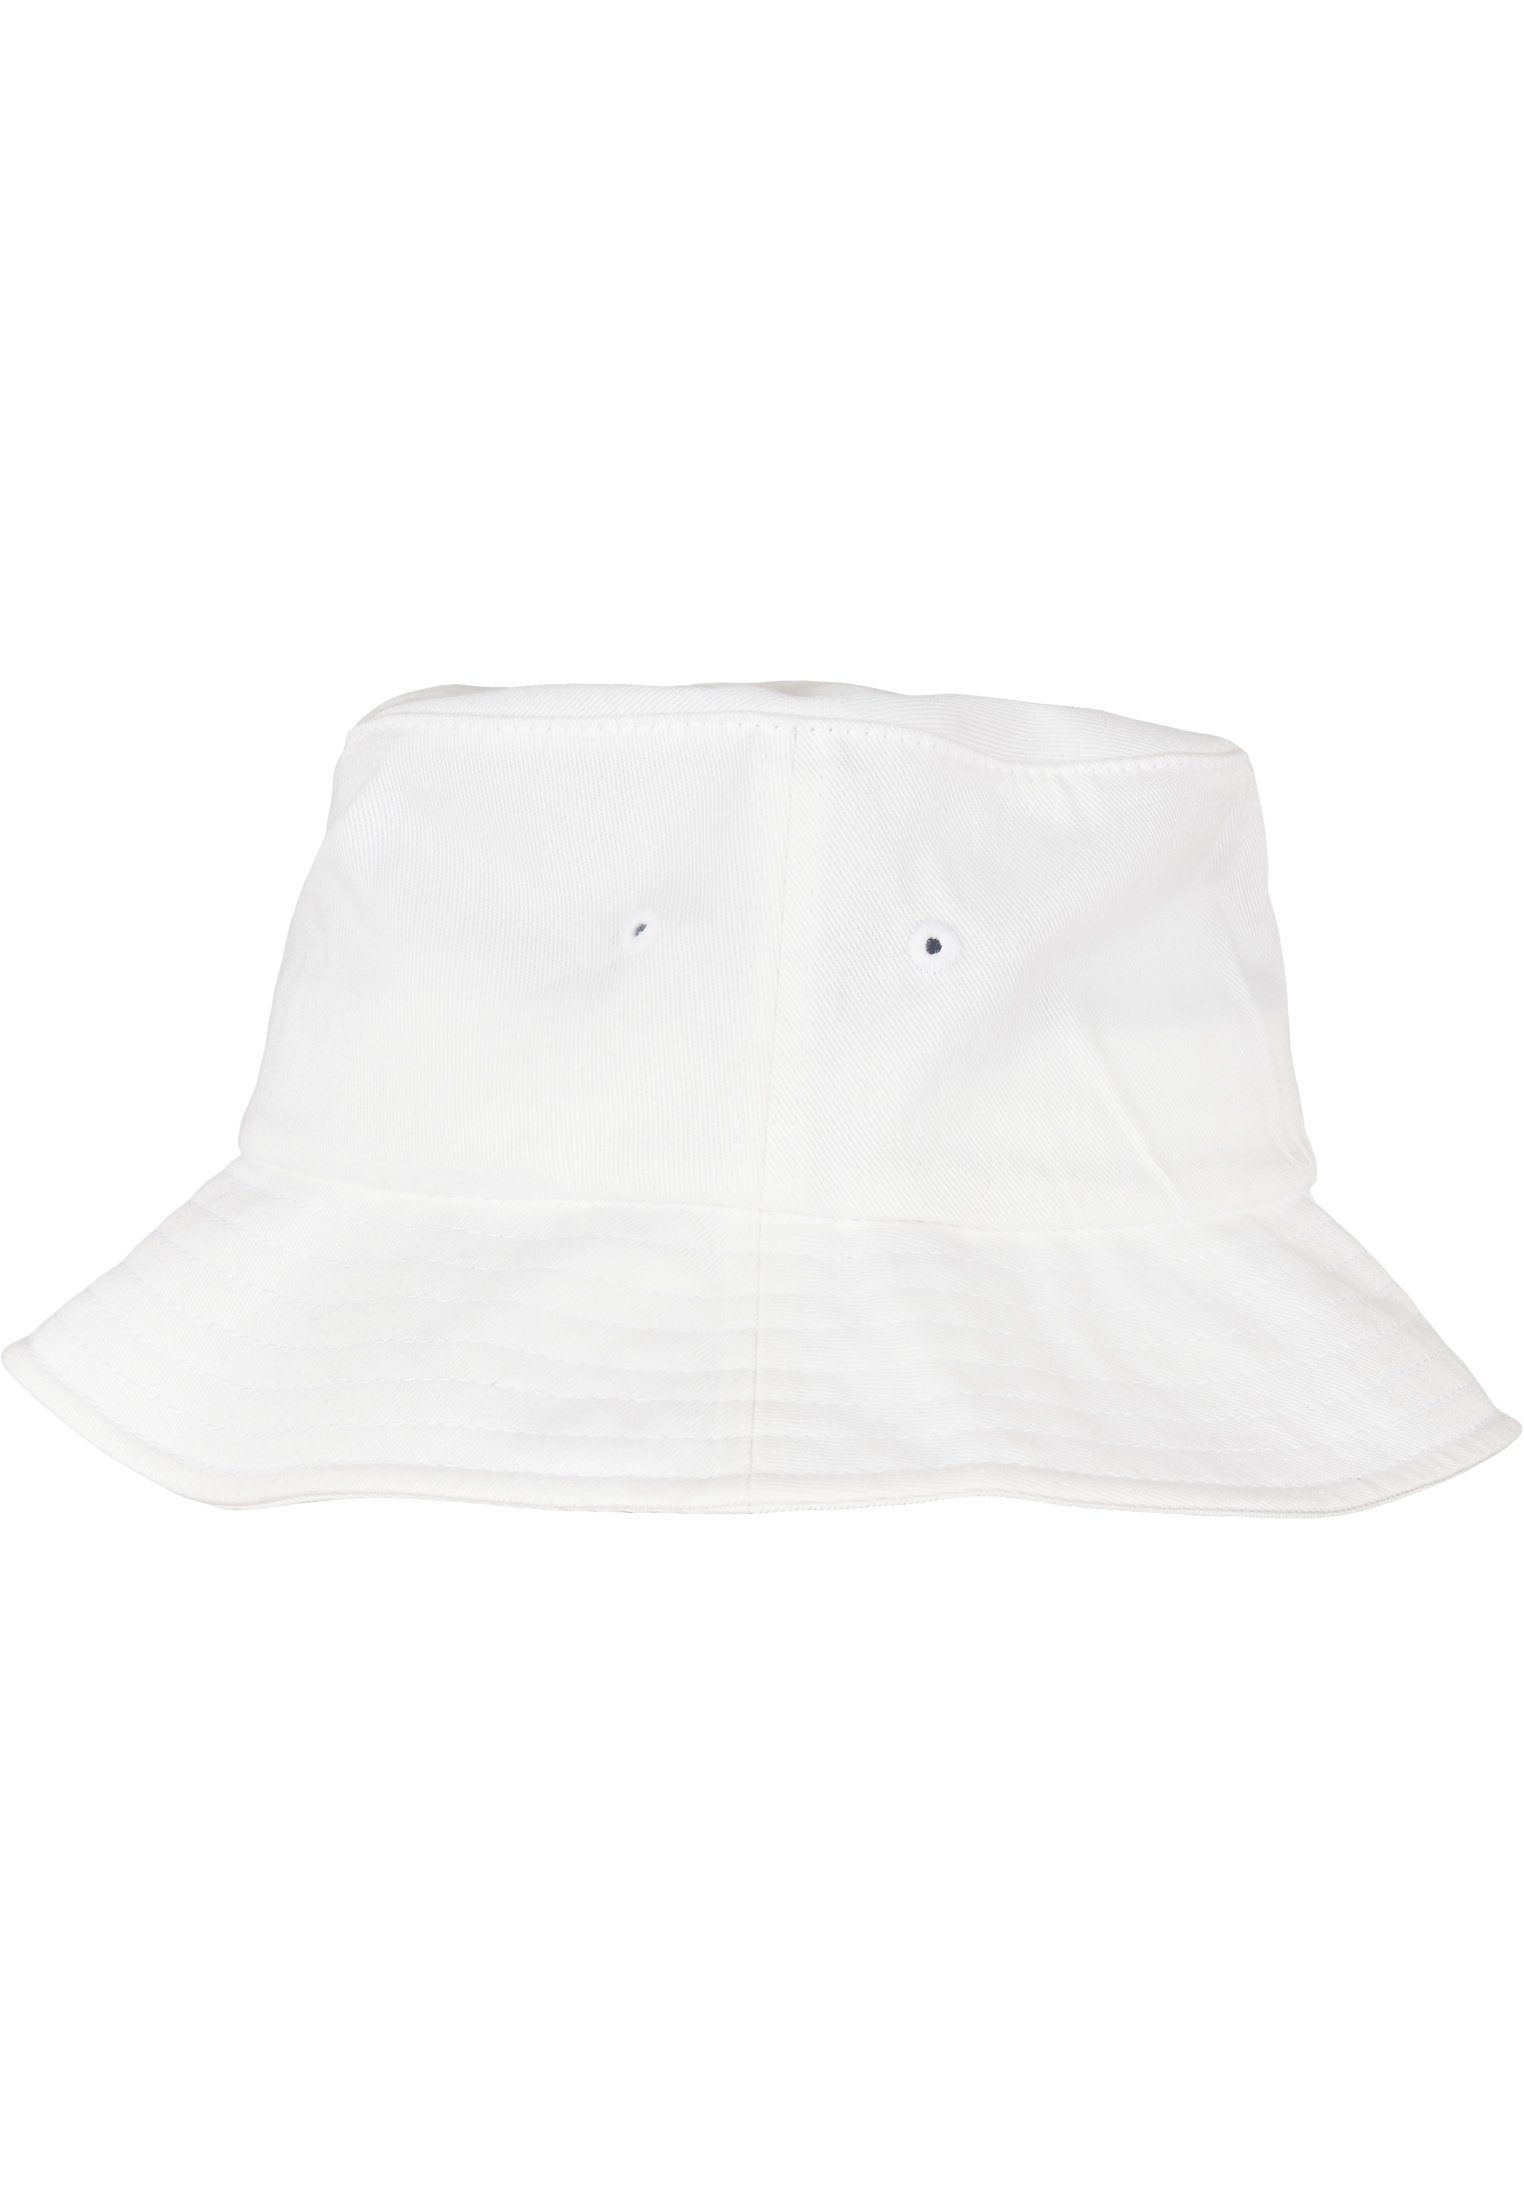 Hat Flex Cap Accessoires Bucket white Flexfit Organic Cotton